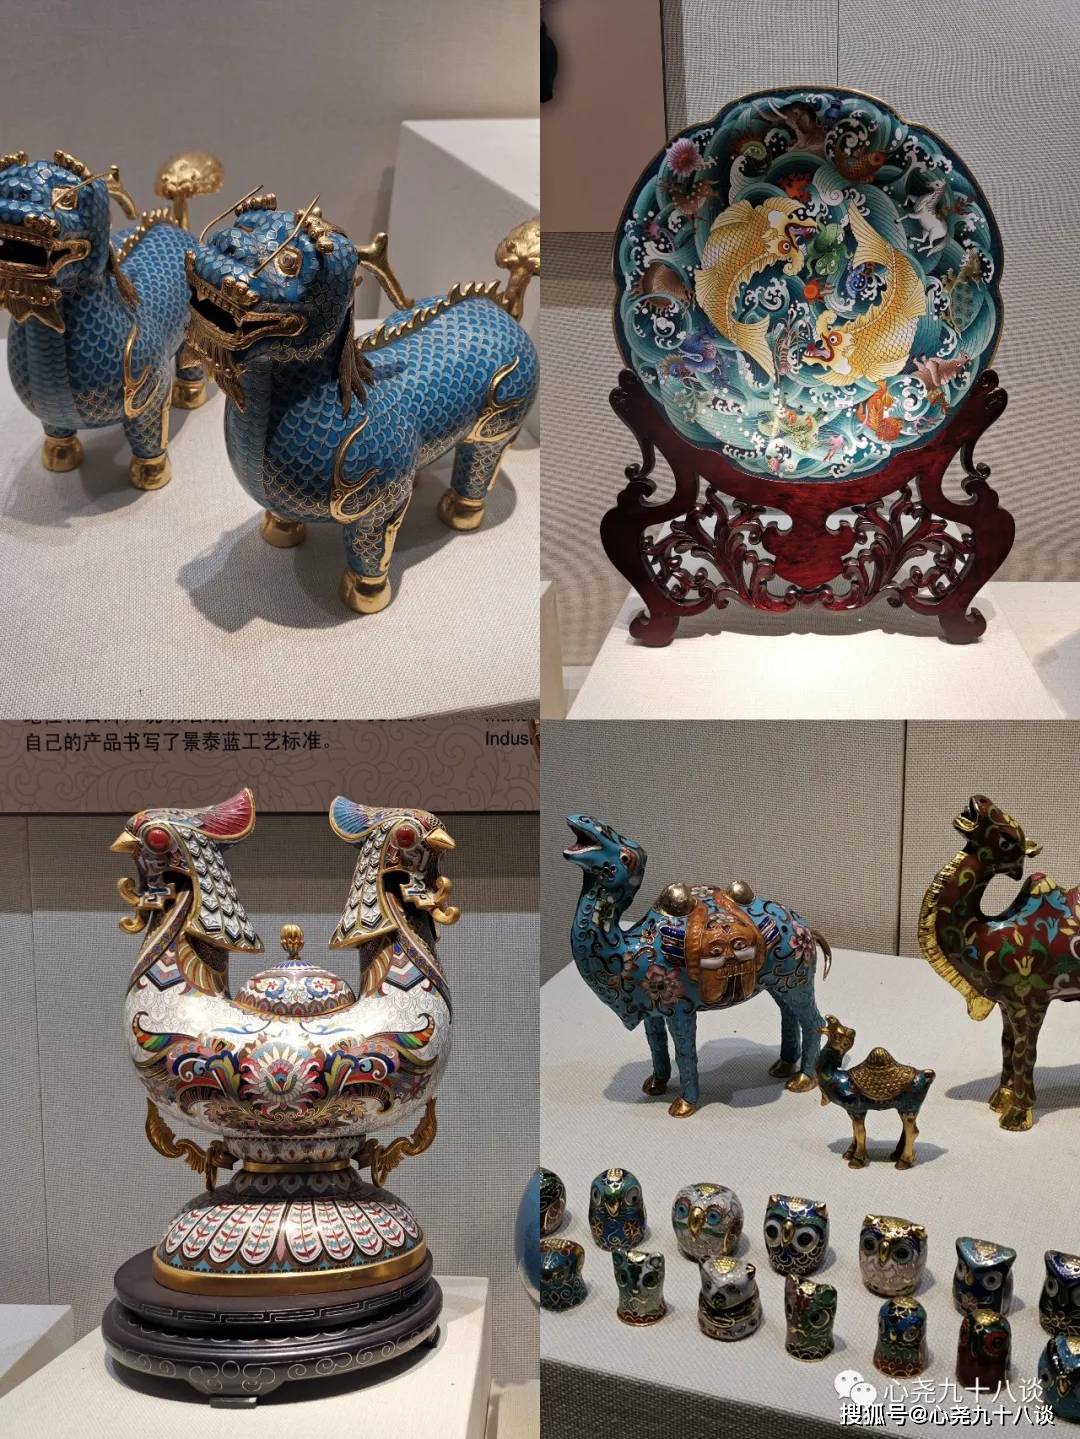 精湛掐丝工艺的古老技艺传承,来中国景泰蓝艺术博物馆